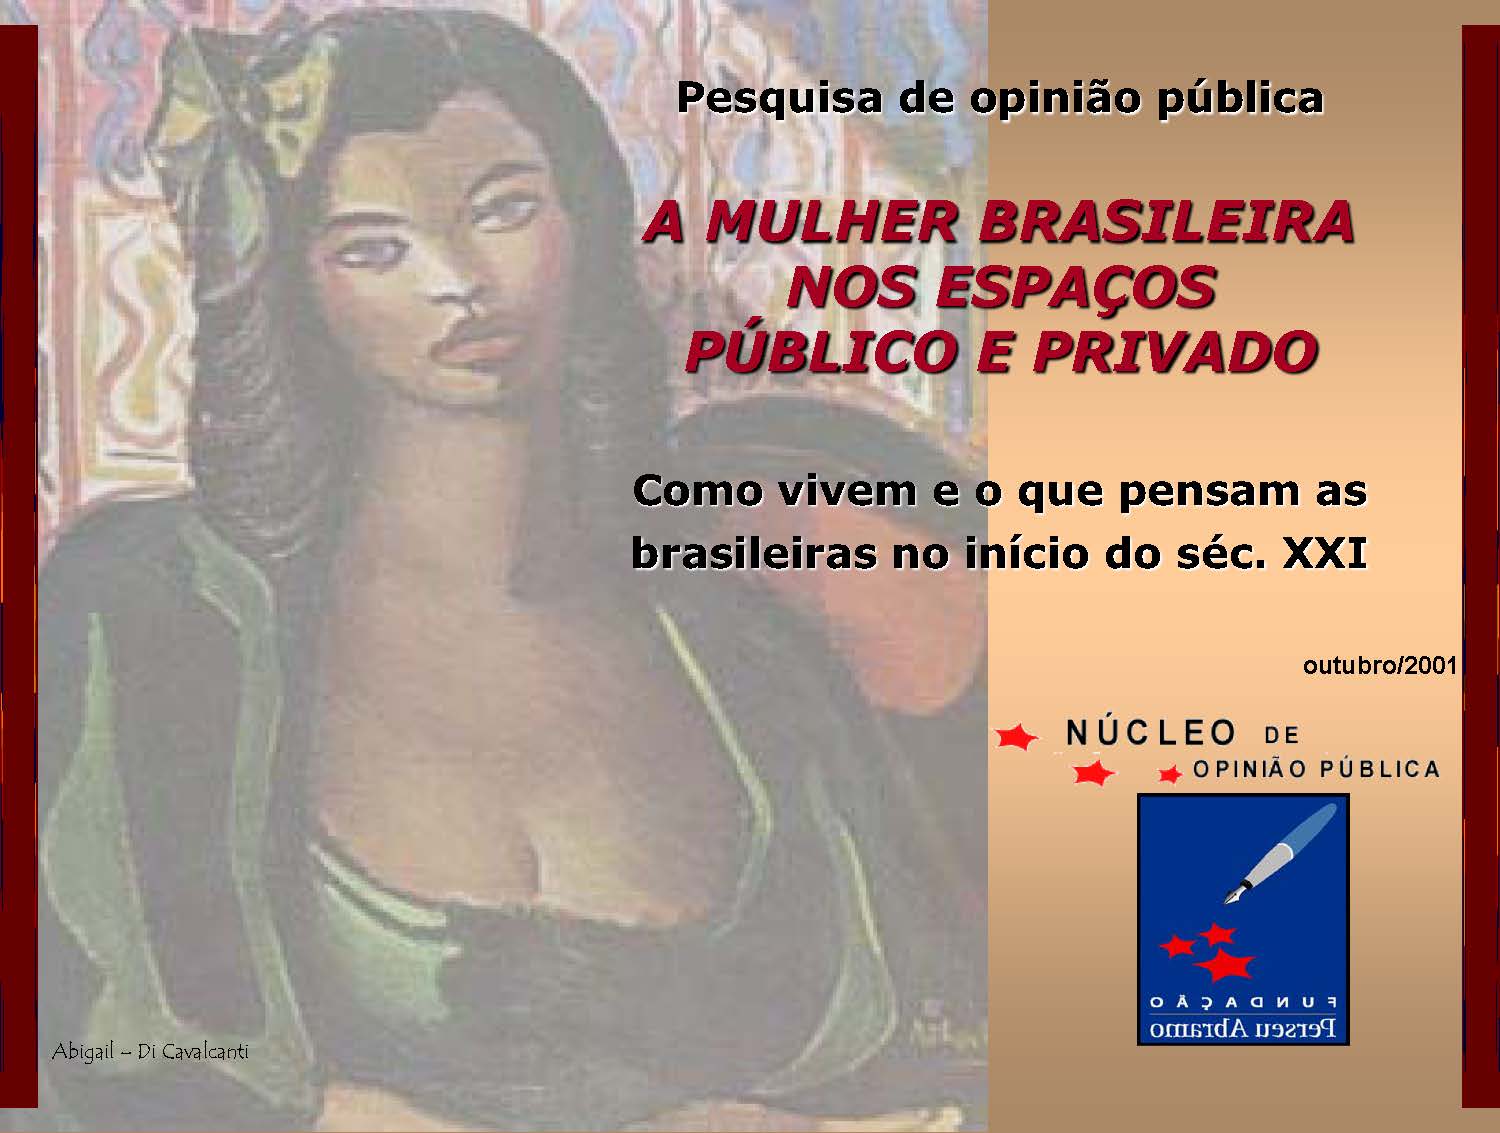 A Mulher Brasileira nos Espaços Público e Privado